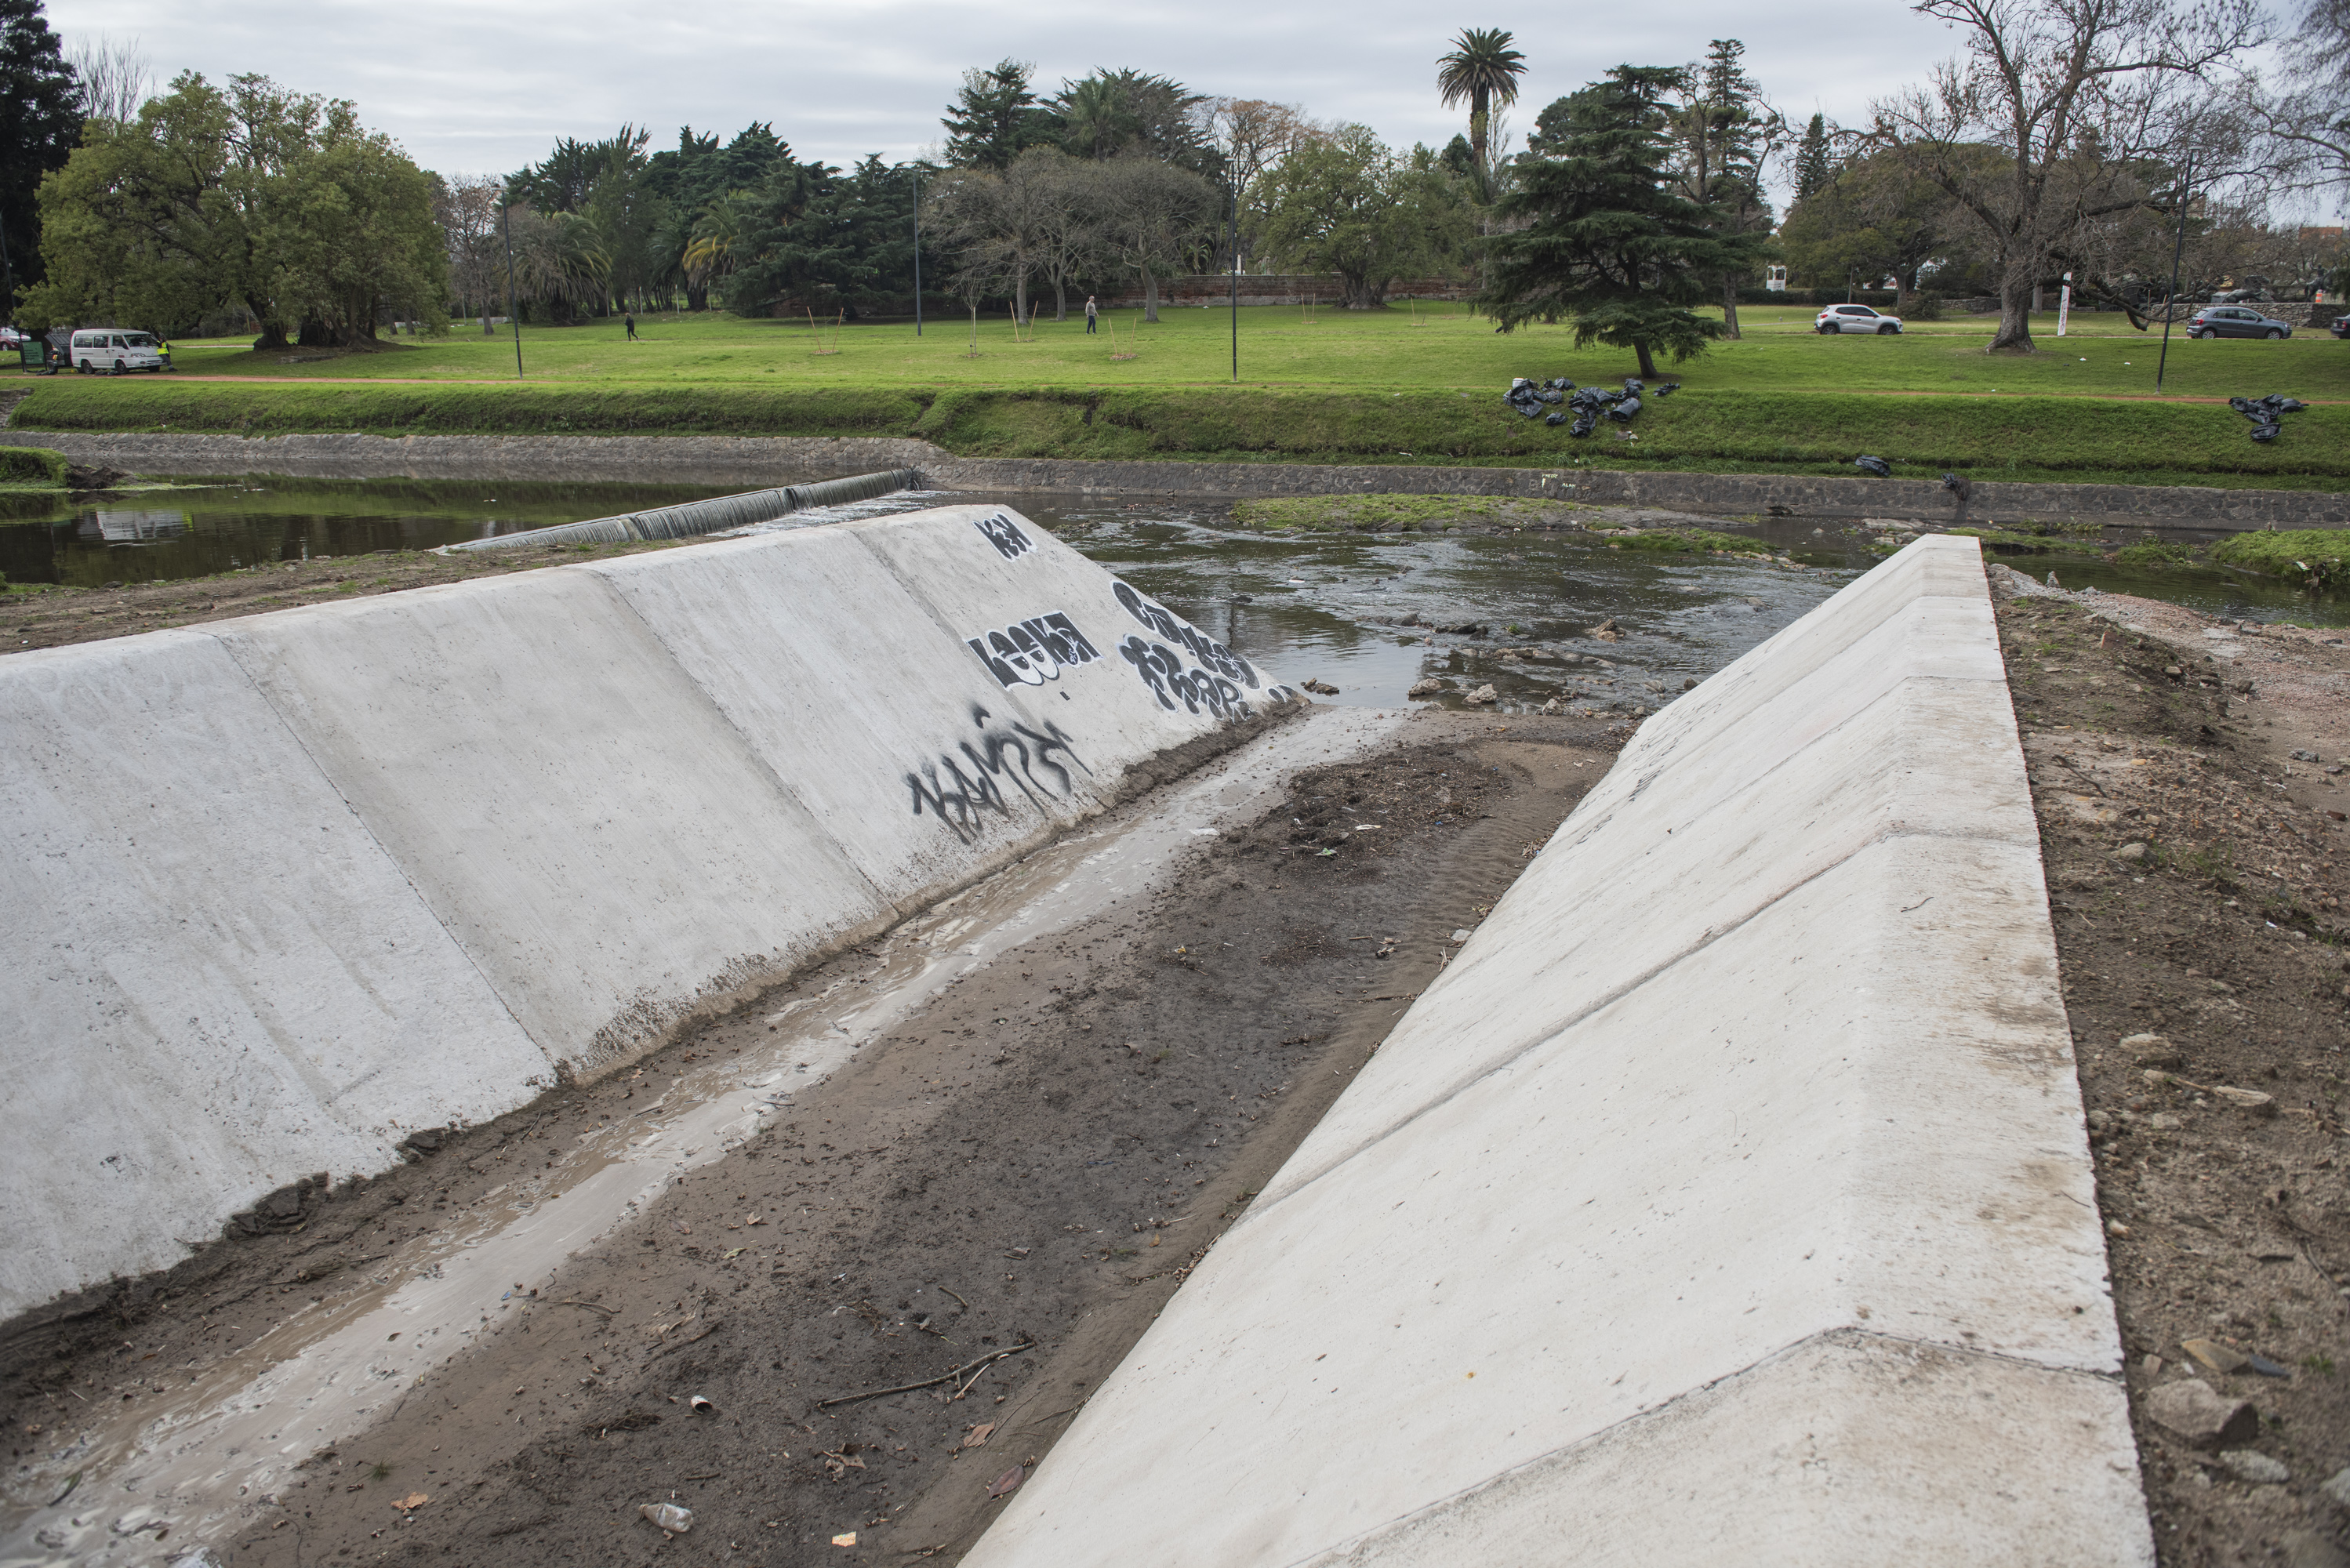 Avance de obras de saneamiento en arroyo Mataperros